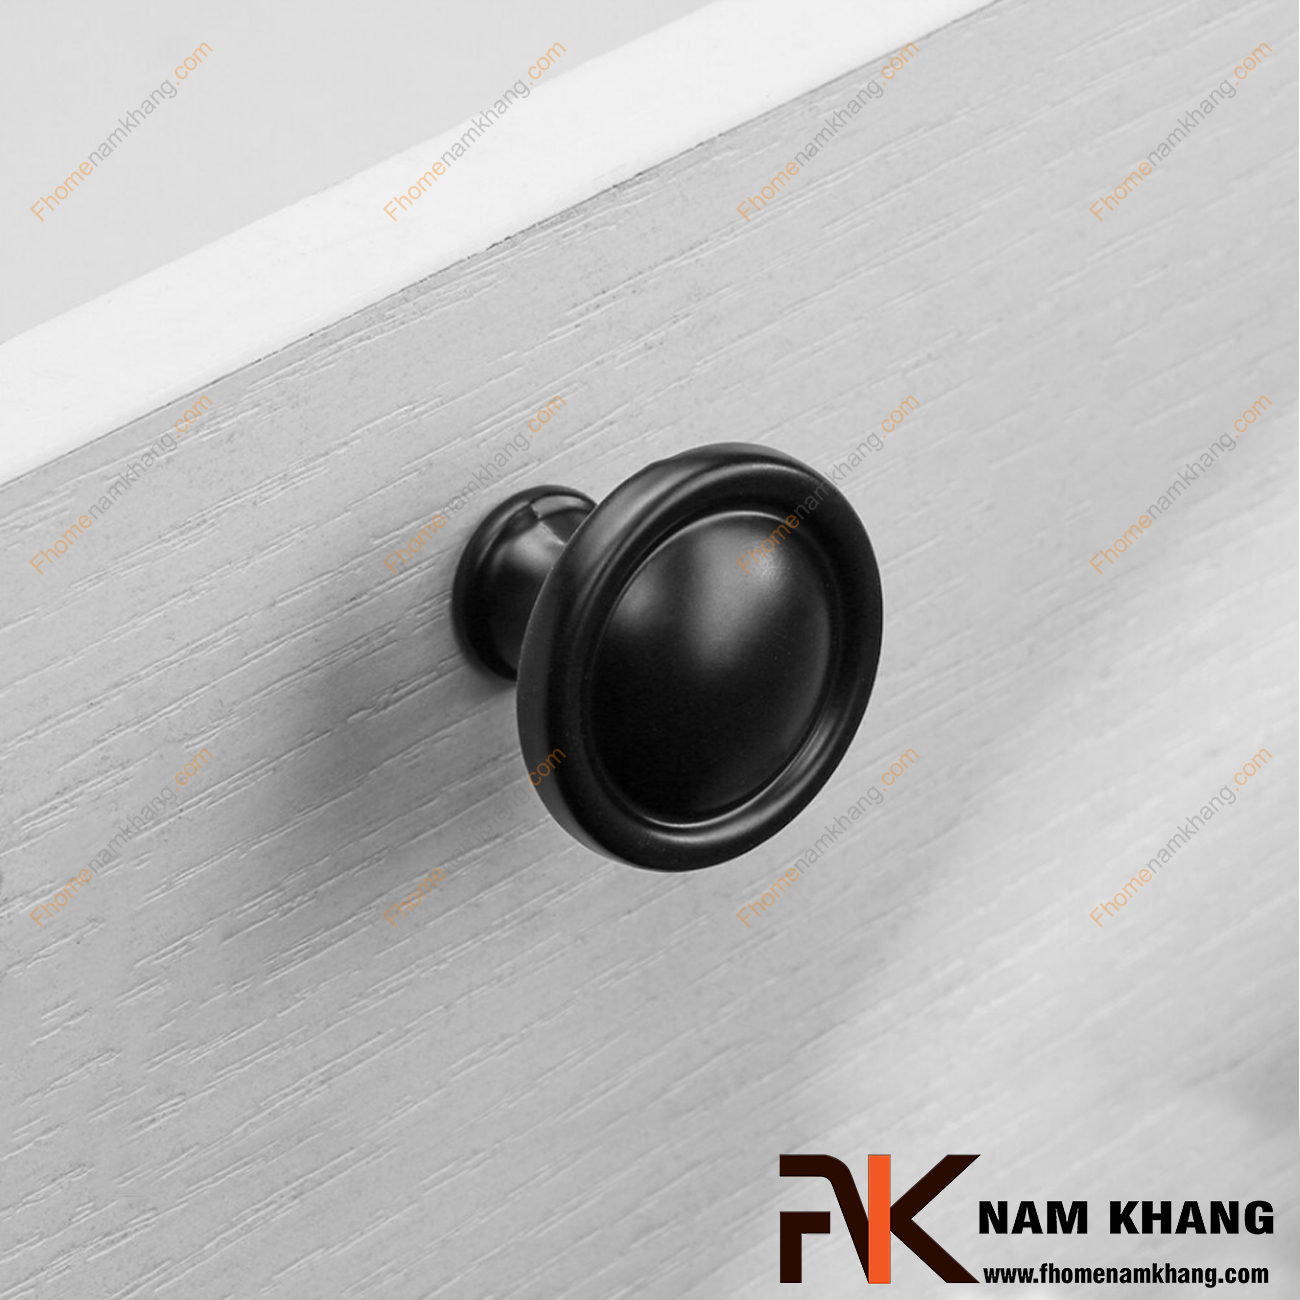 Núm cửa tủ dạng tròn màu đen NK227-D được sử dụng nhiều trên nhiều phong cách tủ kệ khác nhau. Sản phẩm được tin dùng trên các loại tủ kệ trưng bày, tủ quần áo, tủ phong thủy , ngăn kệ bàn làm việc